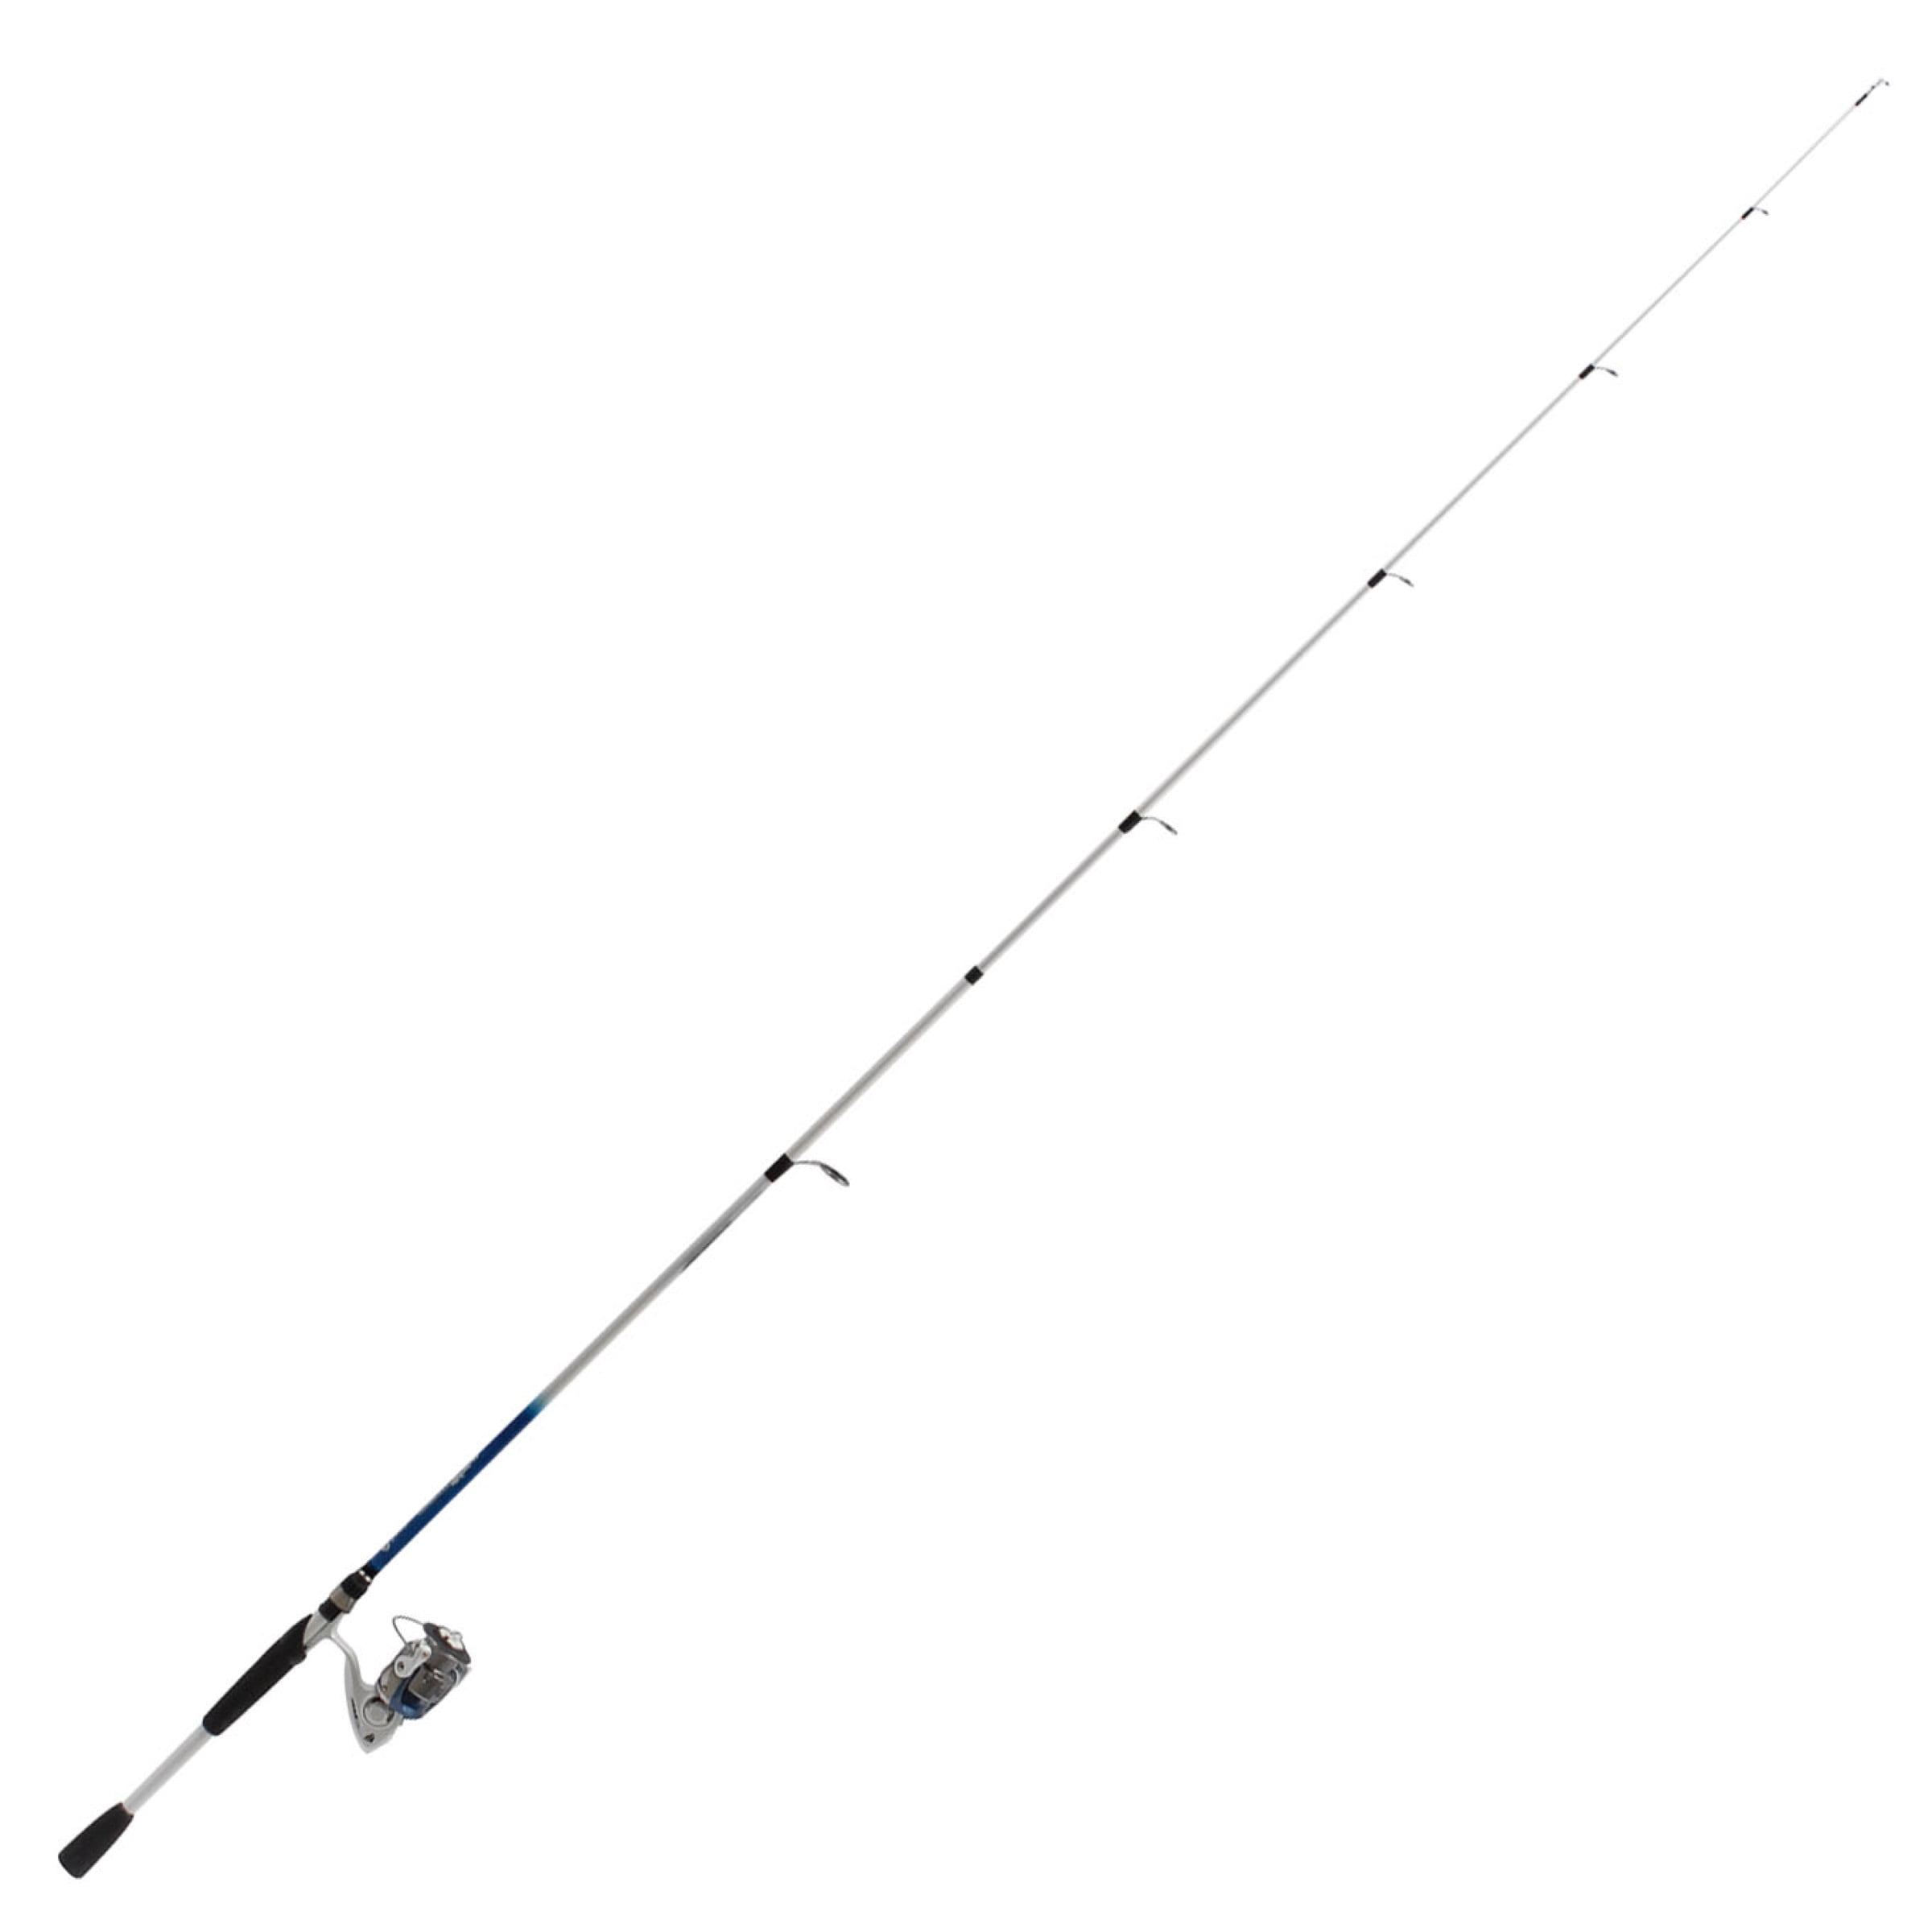 SouthBend Trophy Stalker 7 Ft. Fiberglass Fishing Rod & Spinning Reel 